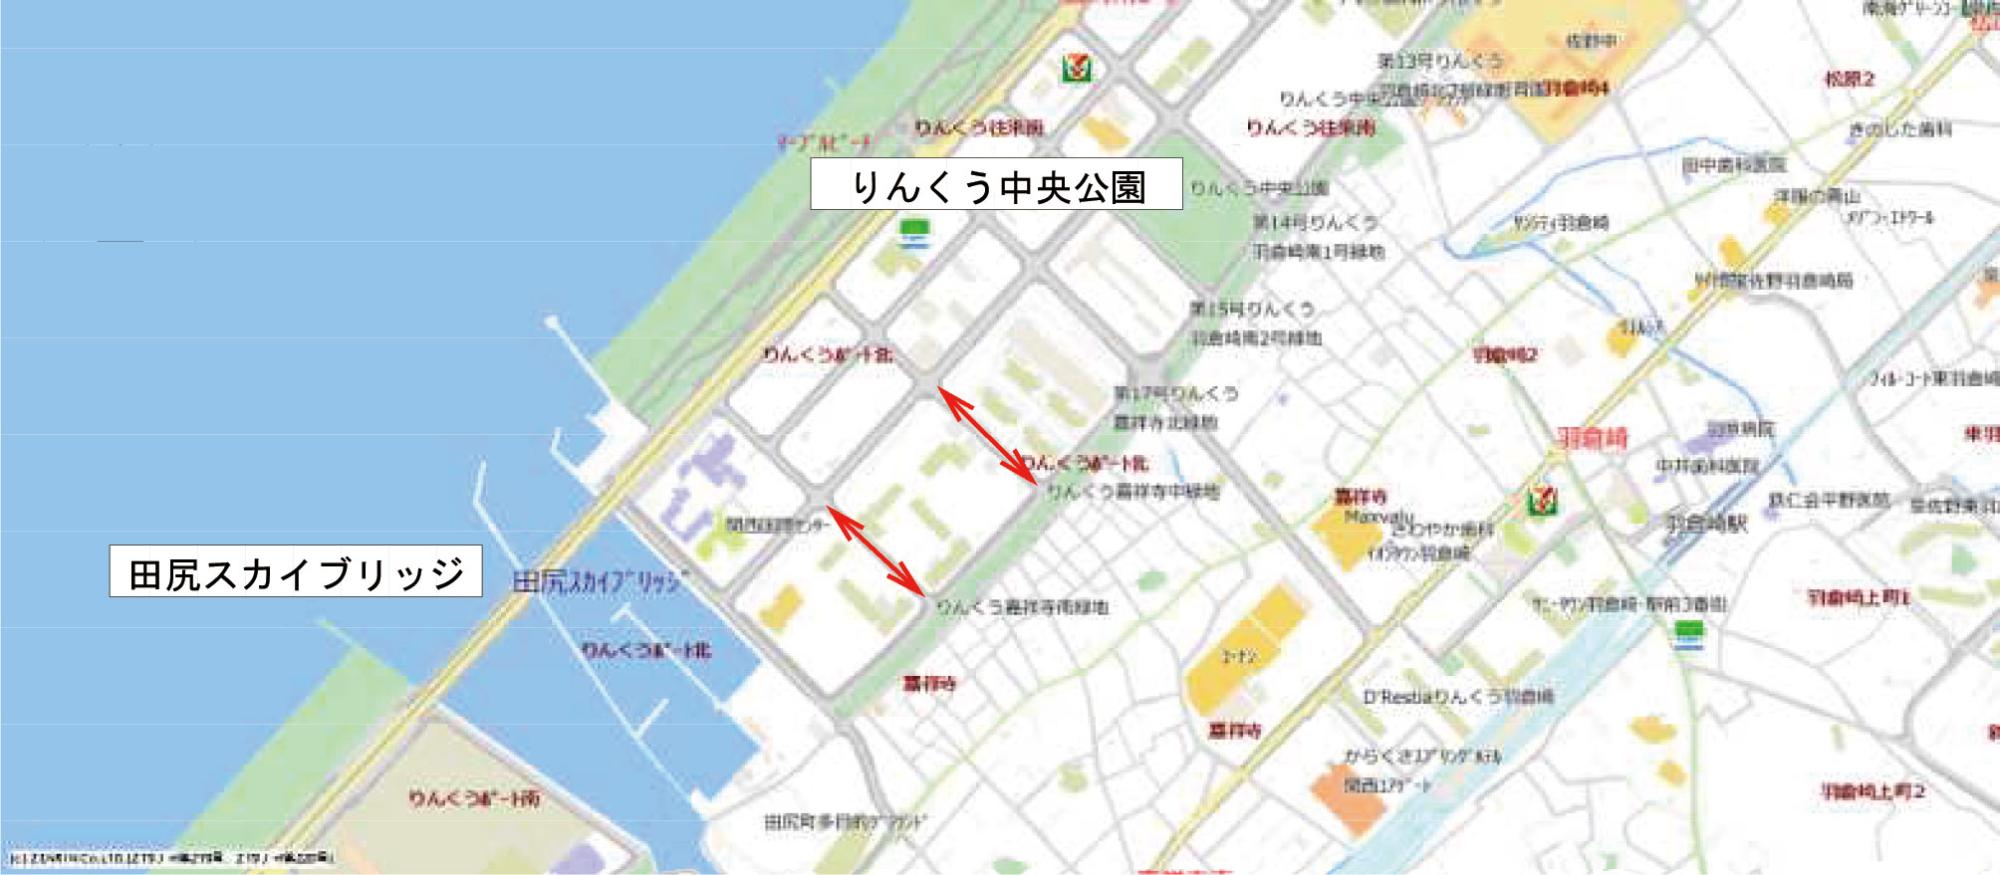 泉南郡田尻町の貨物集配中の貨物車に配意した駐車規制実施場所の地図